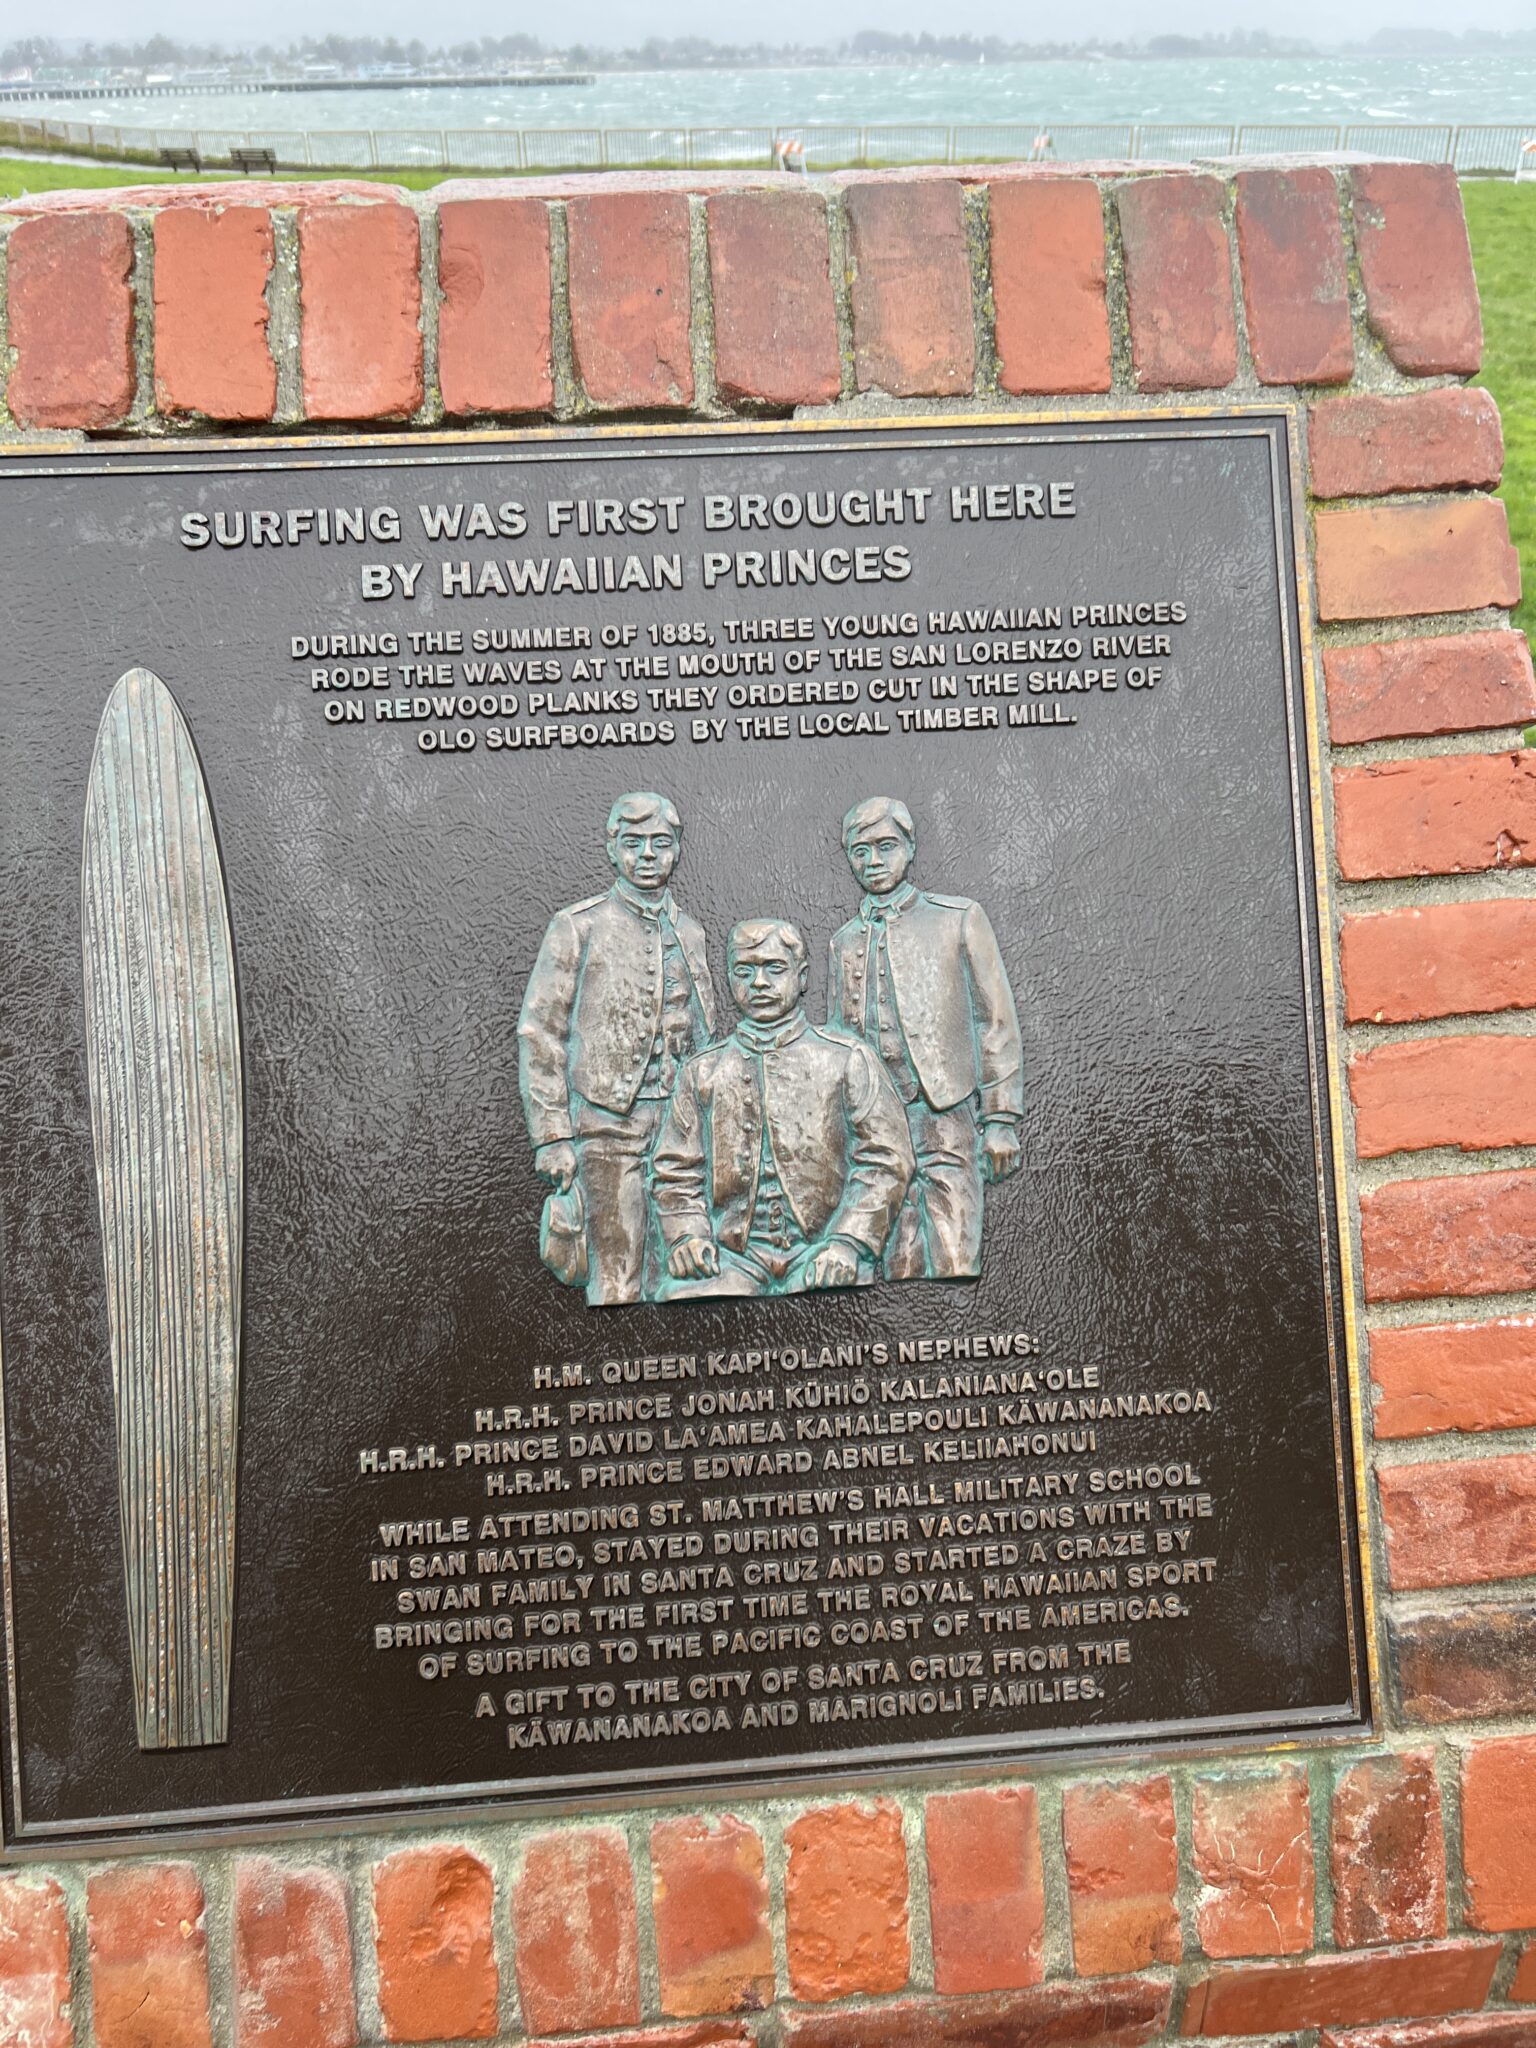 Santra Cruz Gedenktafel dreier Hawaiianischer Prinzen die das Surfen nach Santa Cruz gebracht haben